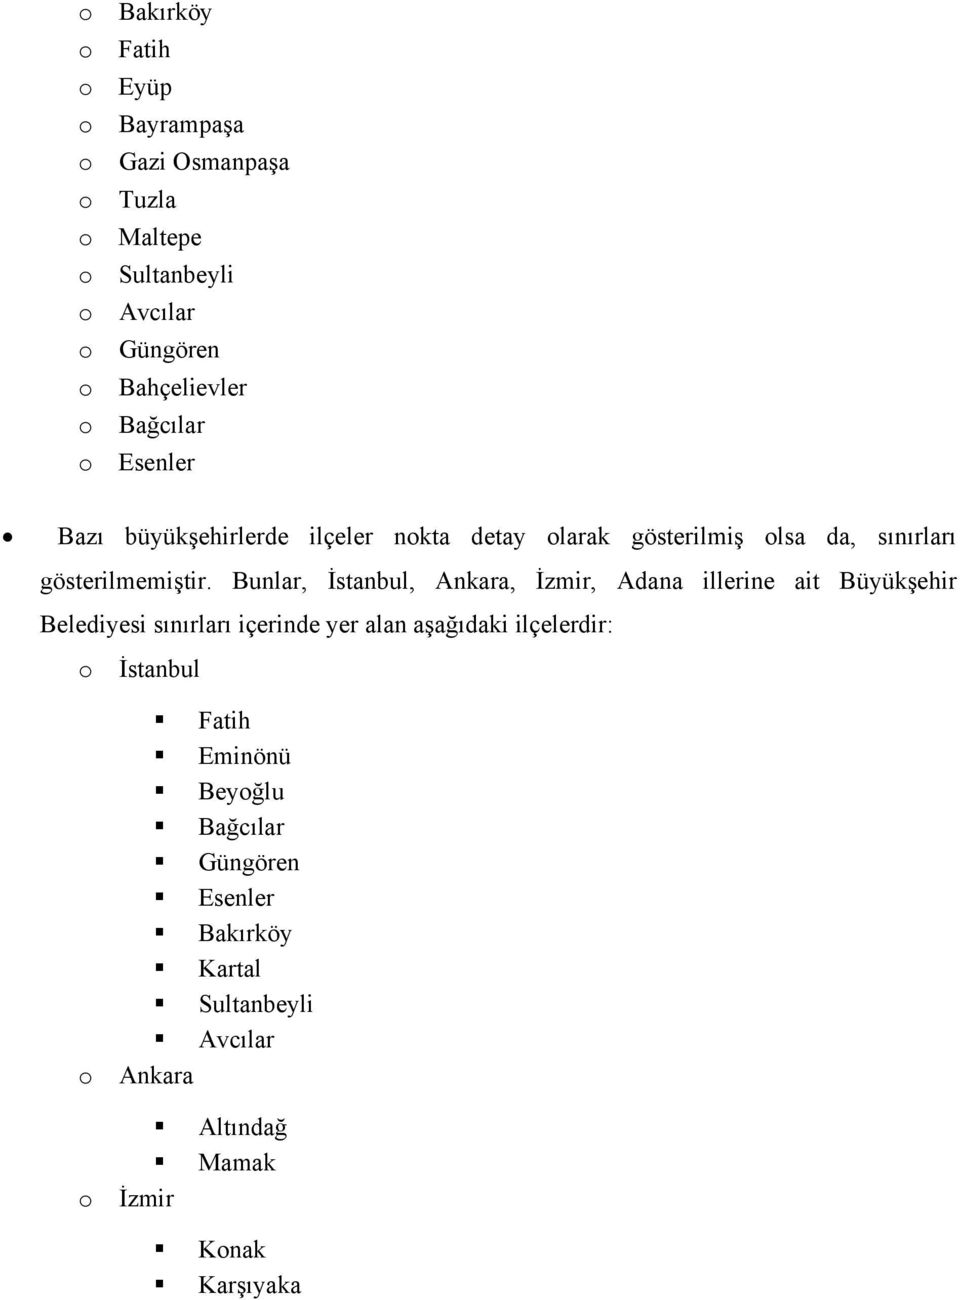 Bunlar, İstanbul, Ankara, İzmir, Adana illerine ait Büyükşehir Belediyesi sınırları içerinde yer alan aşağıdaki